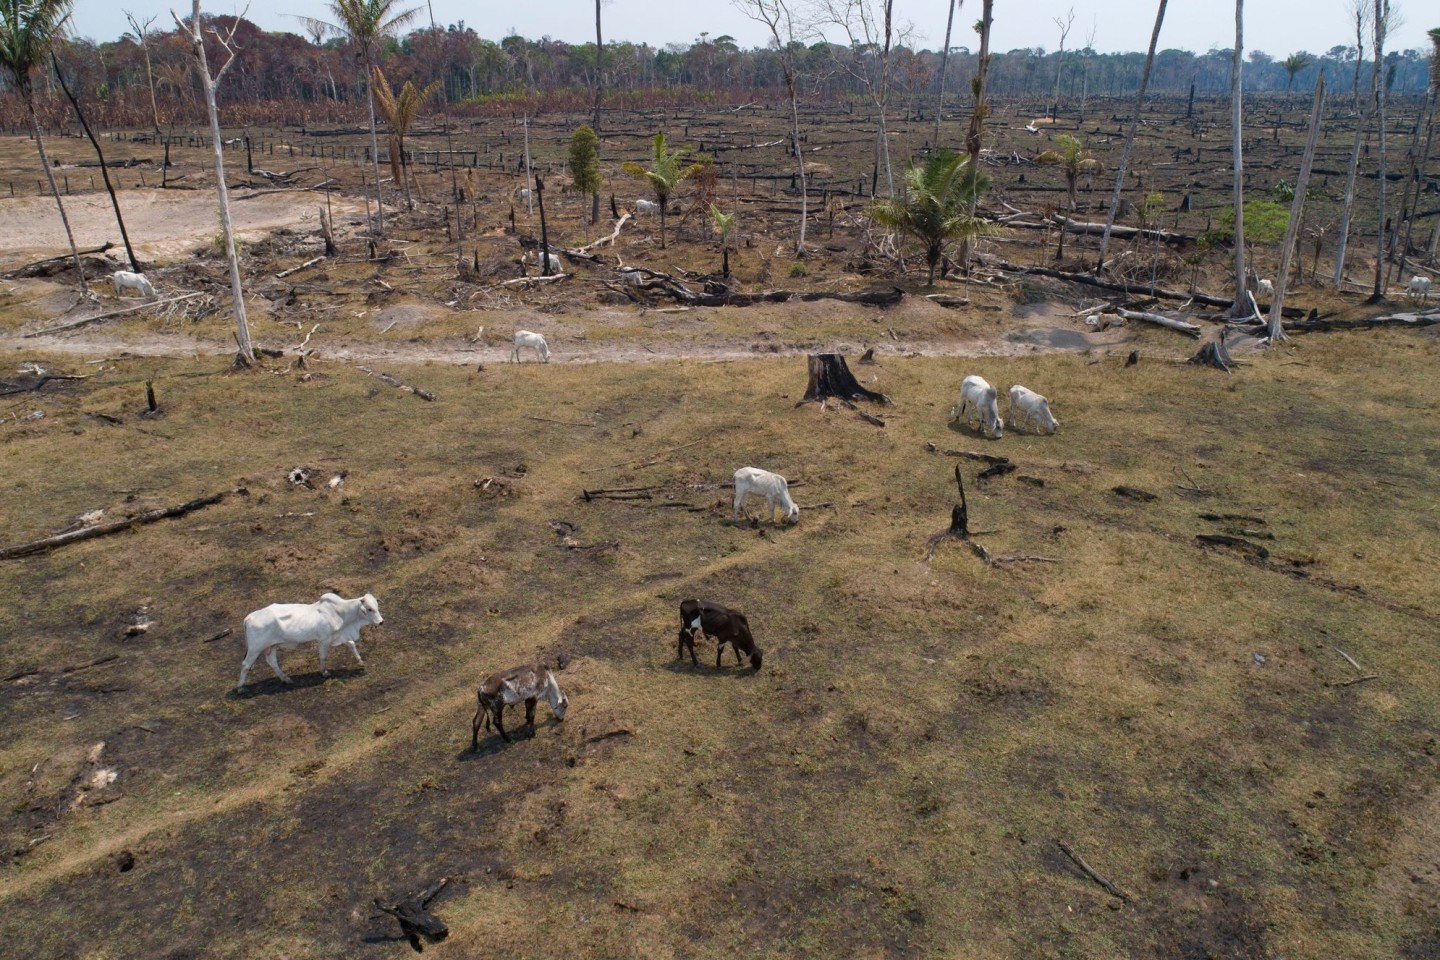 Rinder grasen auf einer verbrannten und abgeholzten Fläche in Brasilien.